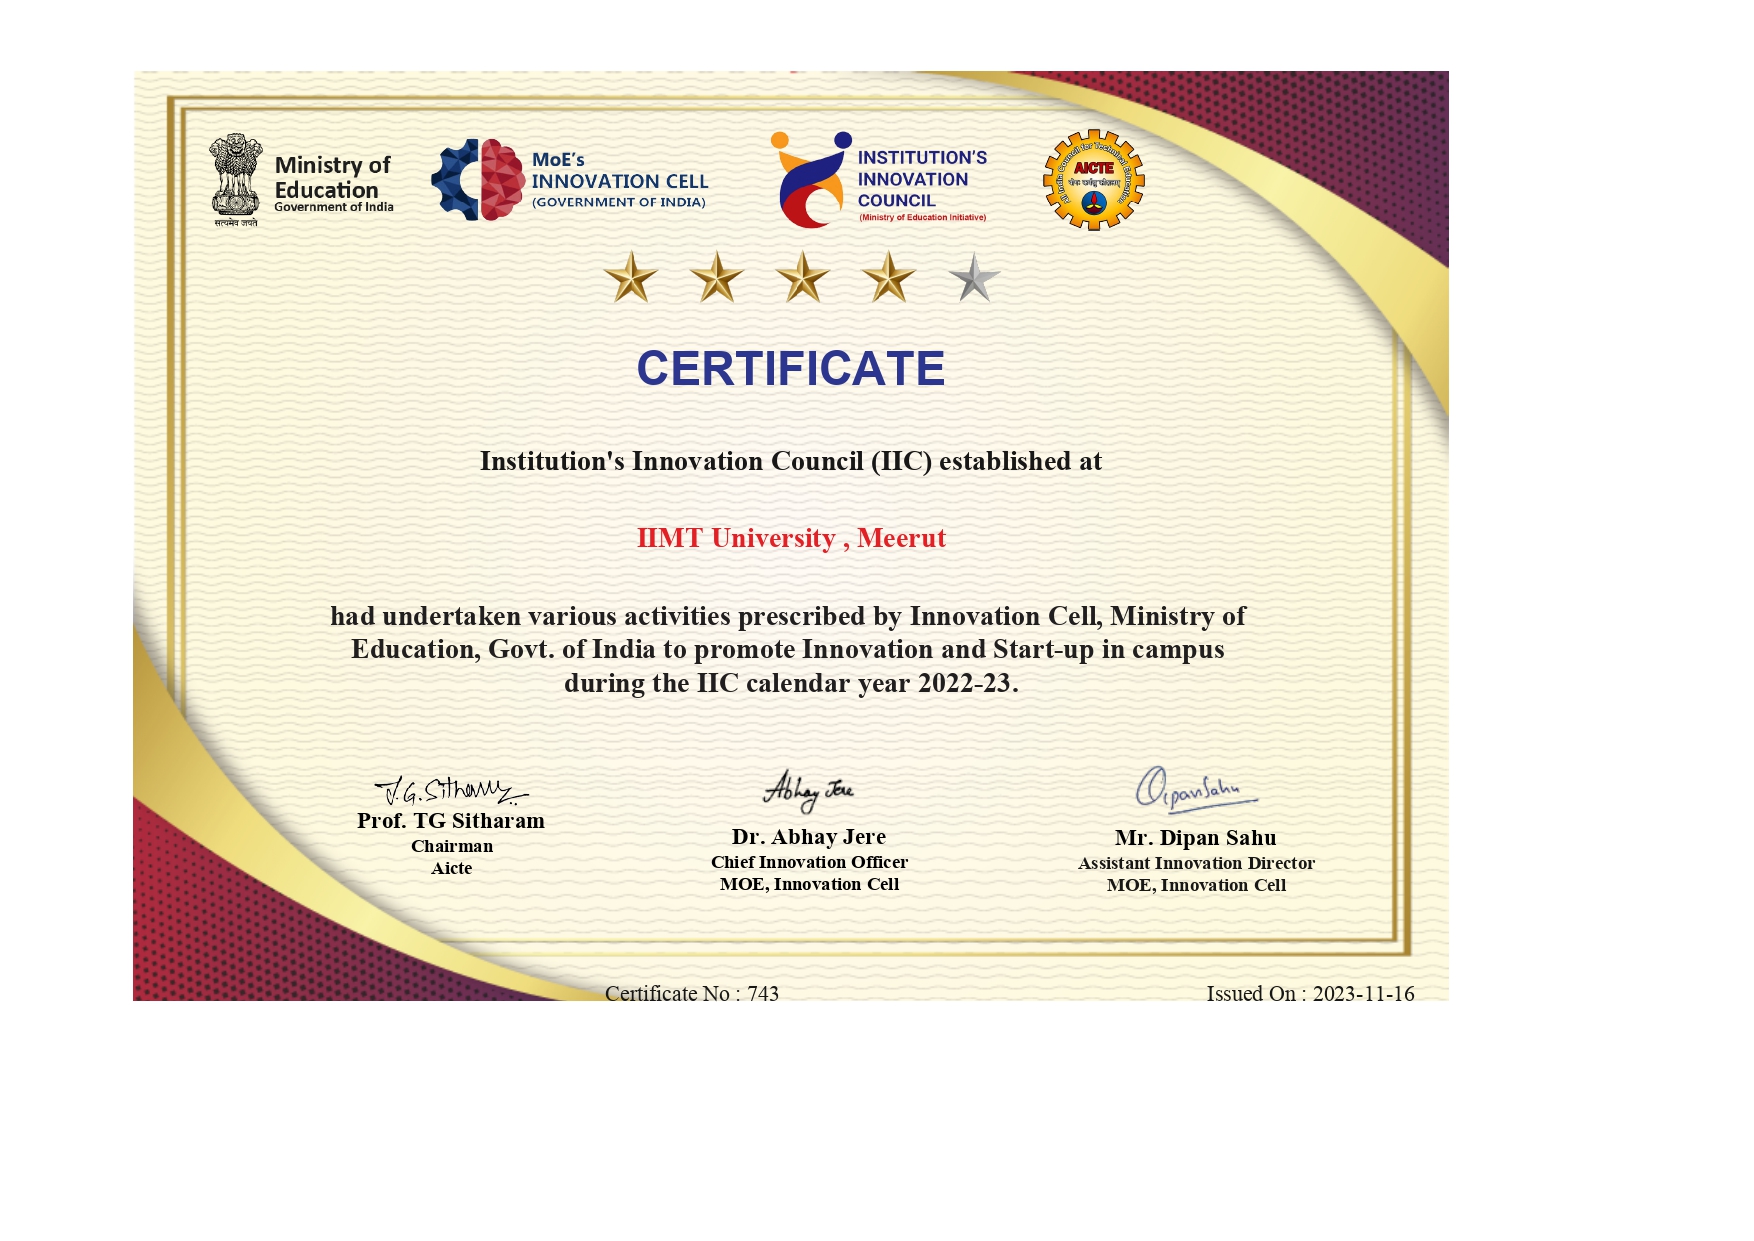 IIC Rating Certificate 2022-23 - IIMT University